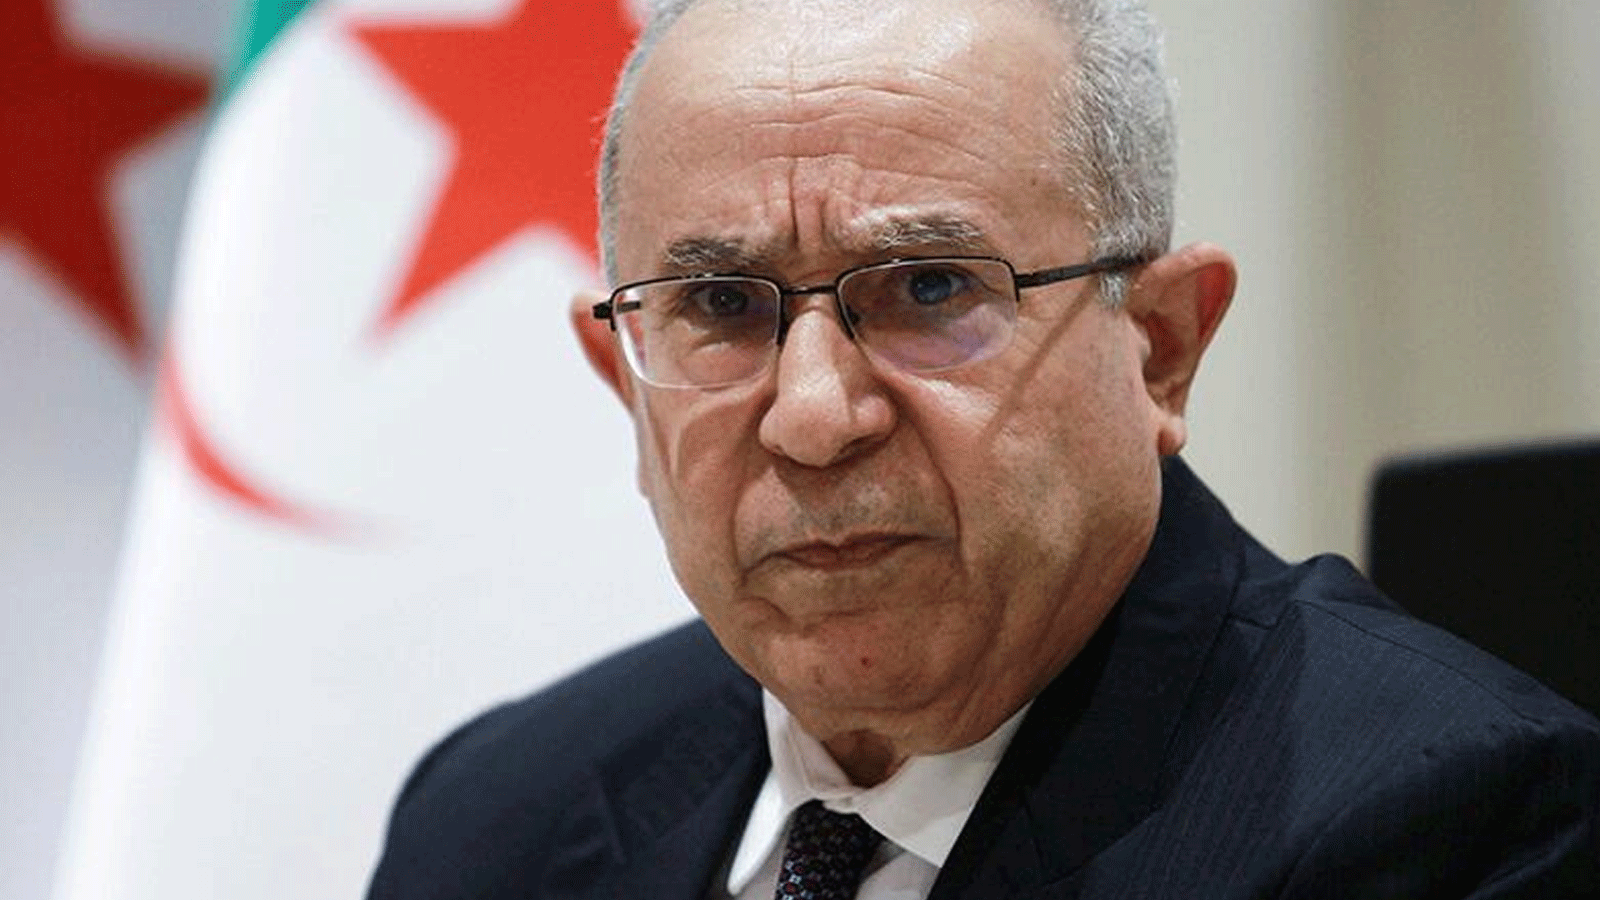 وزير الخارجية الجزائري رمطان لعمامرة